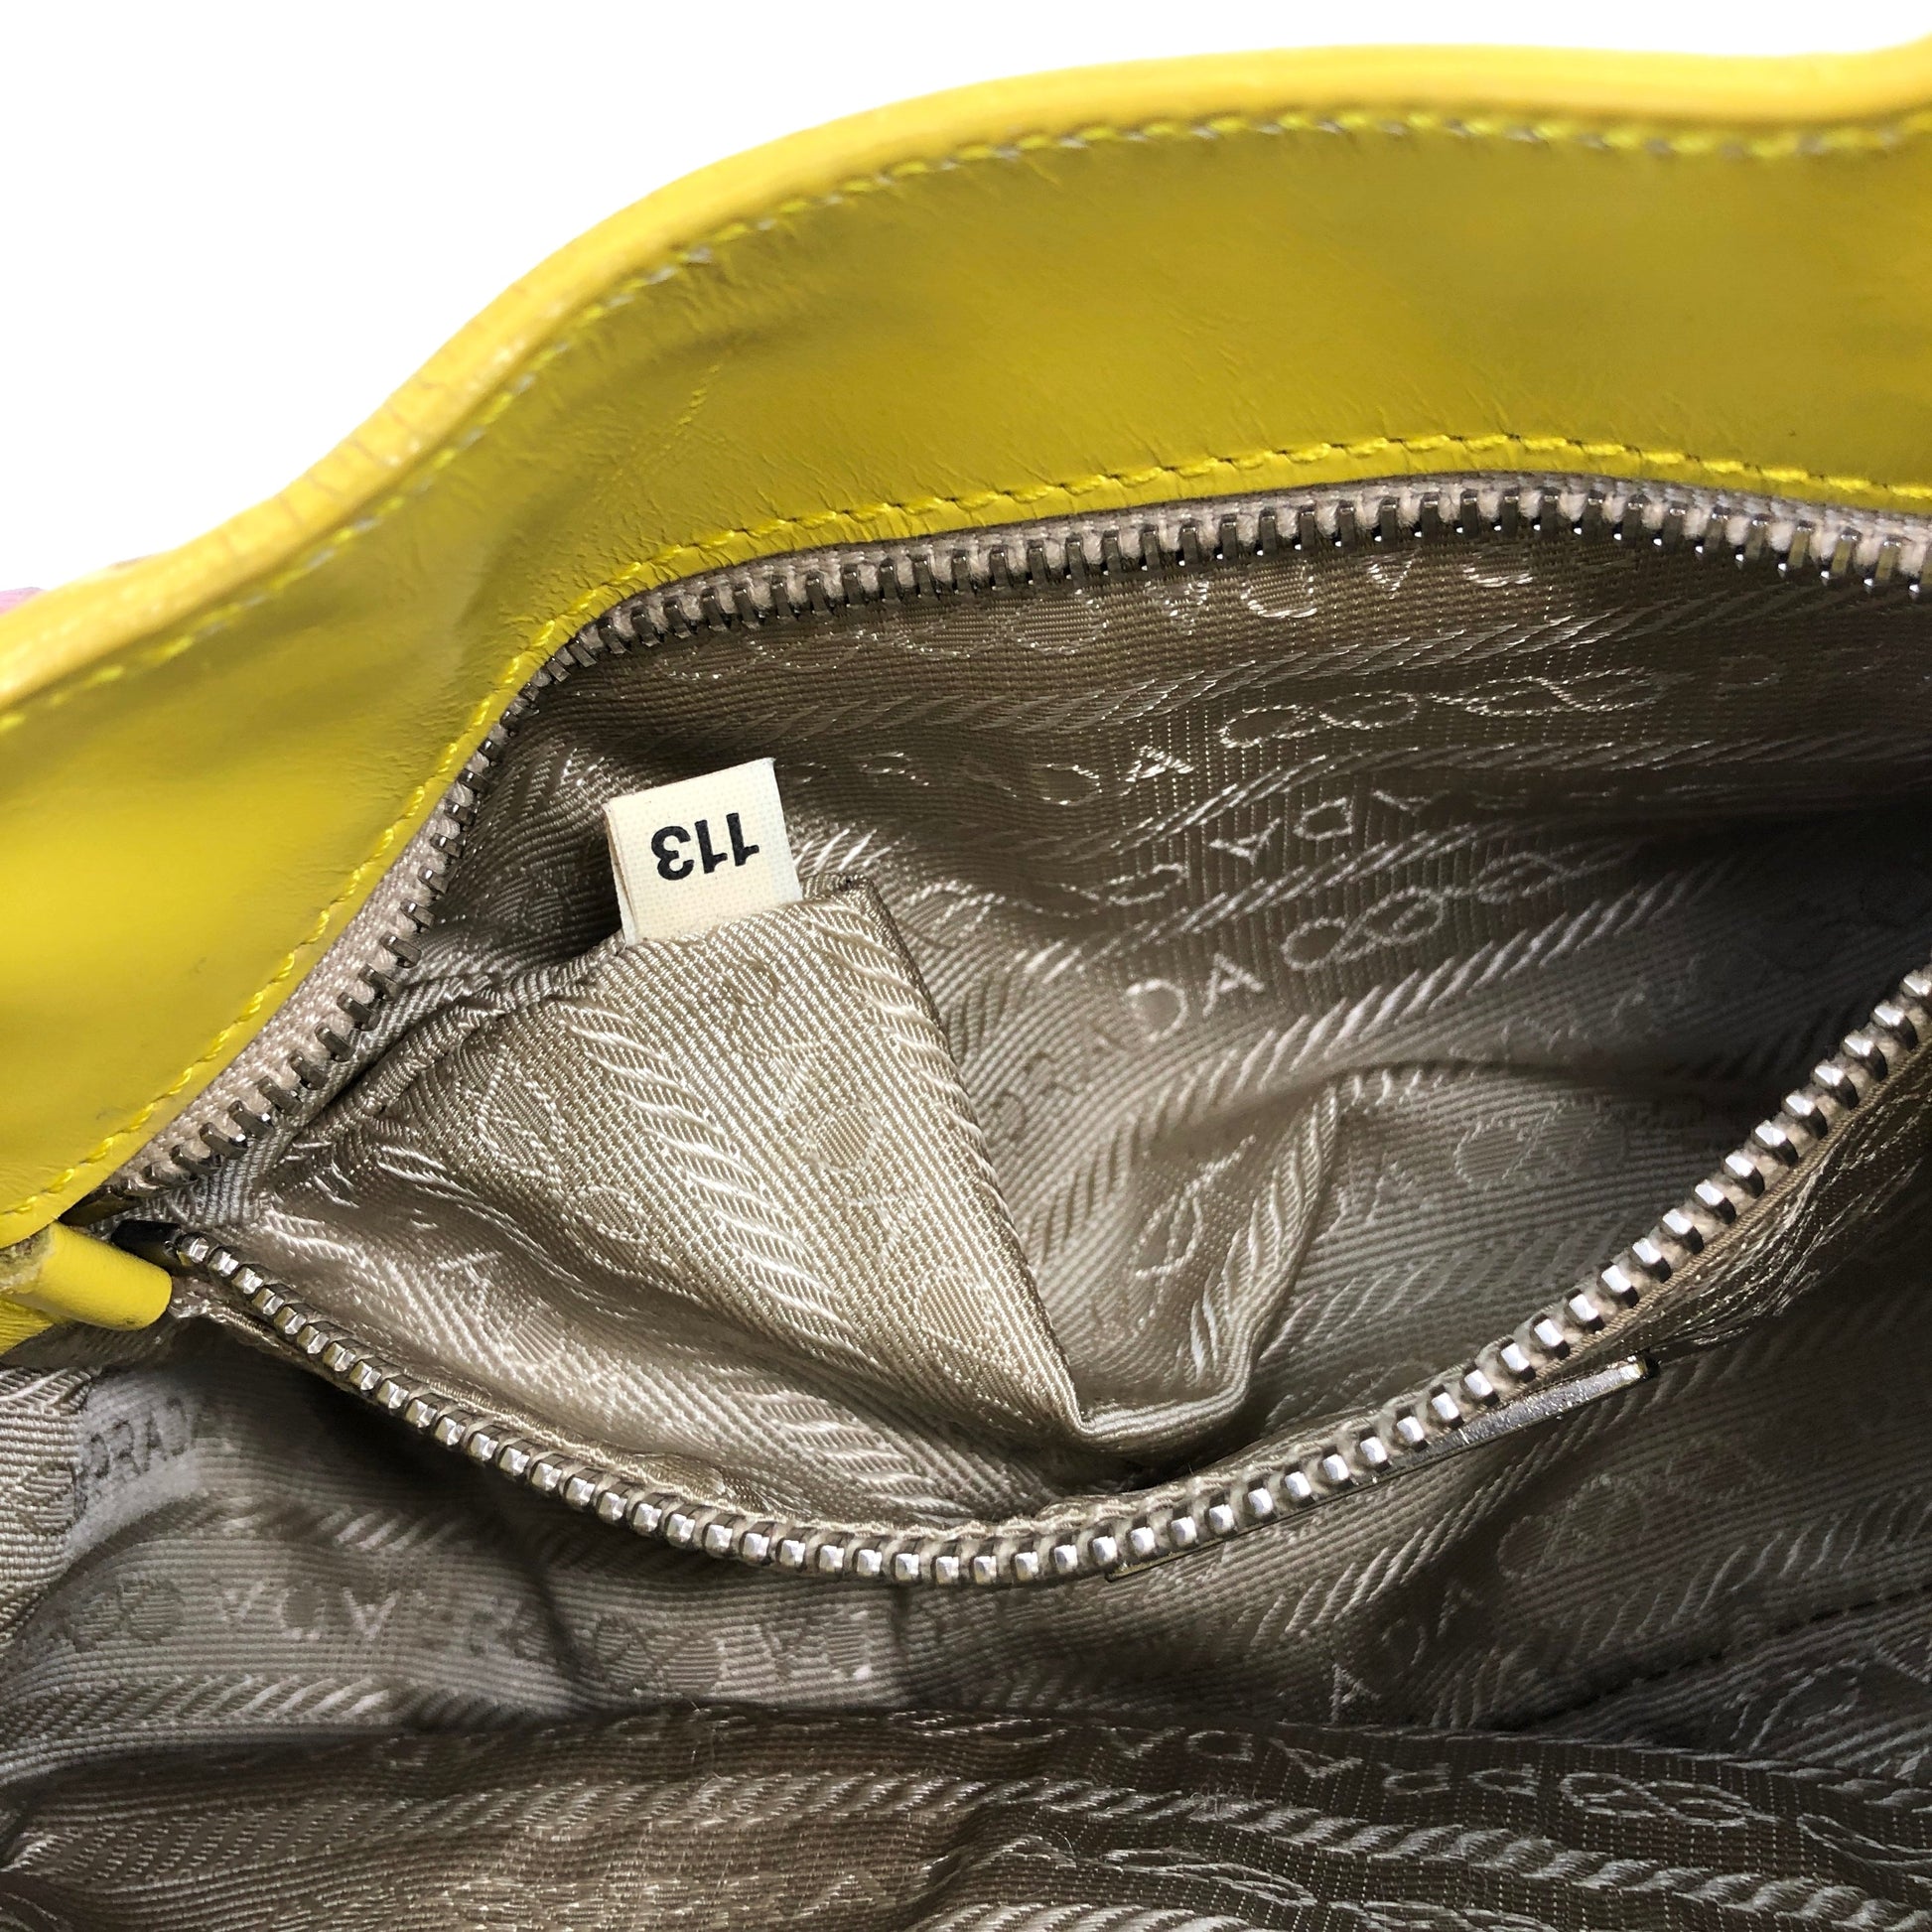 Prada Yellow Shoulder Bags